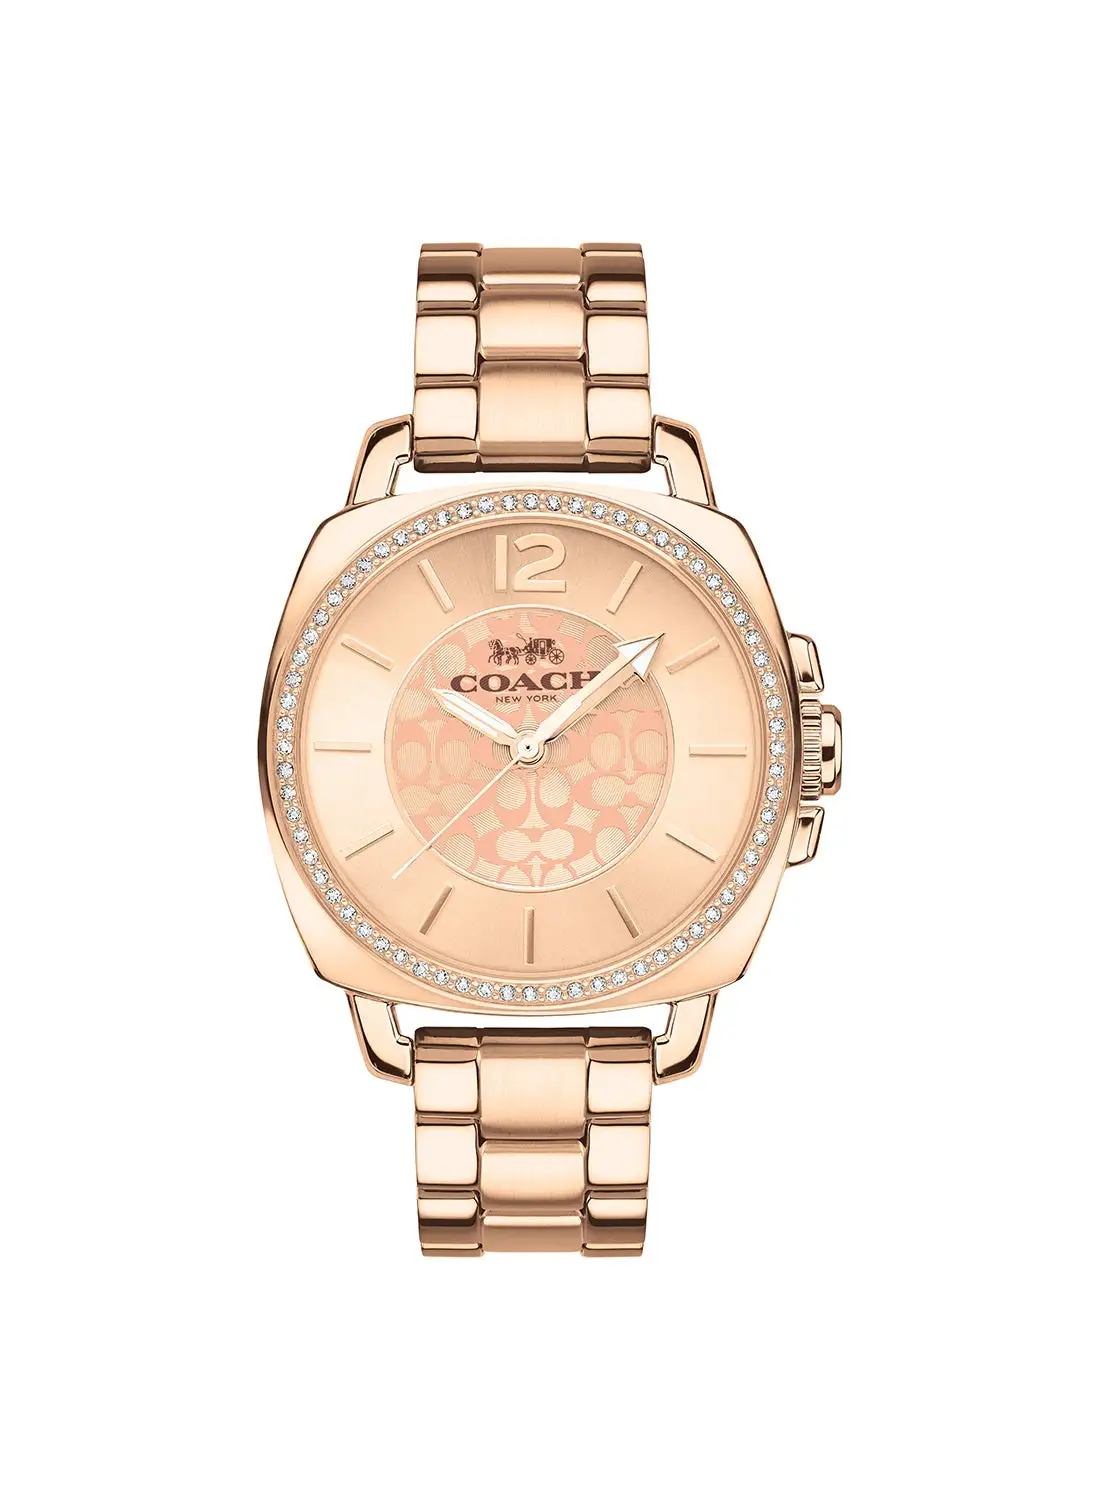 COACH Women's Stainless Steel Wrist Watch 14503142